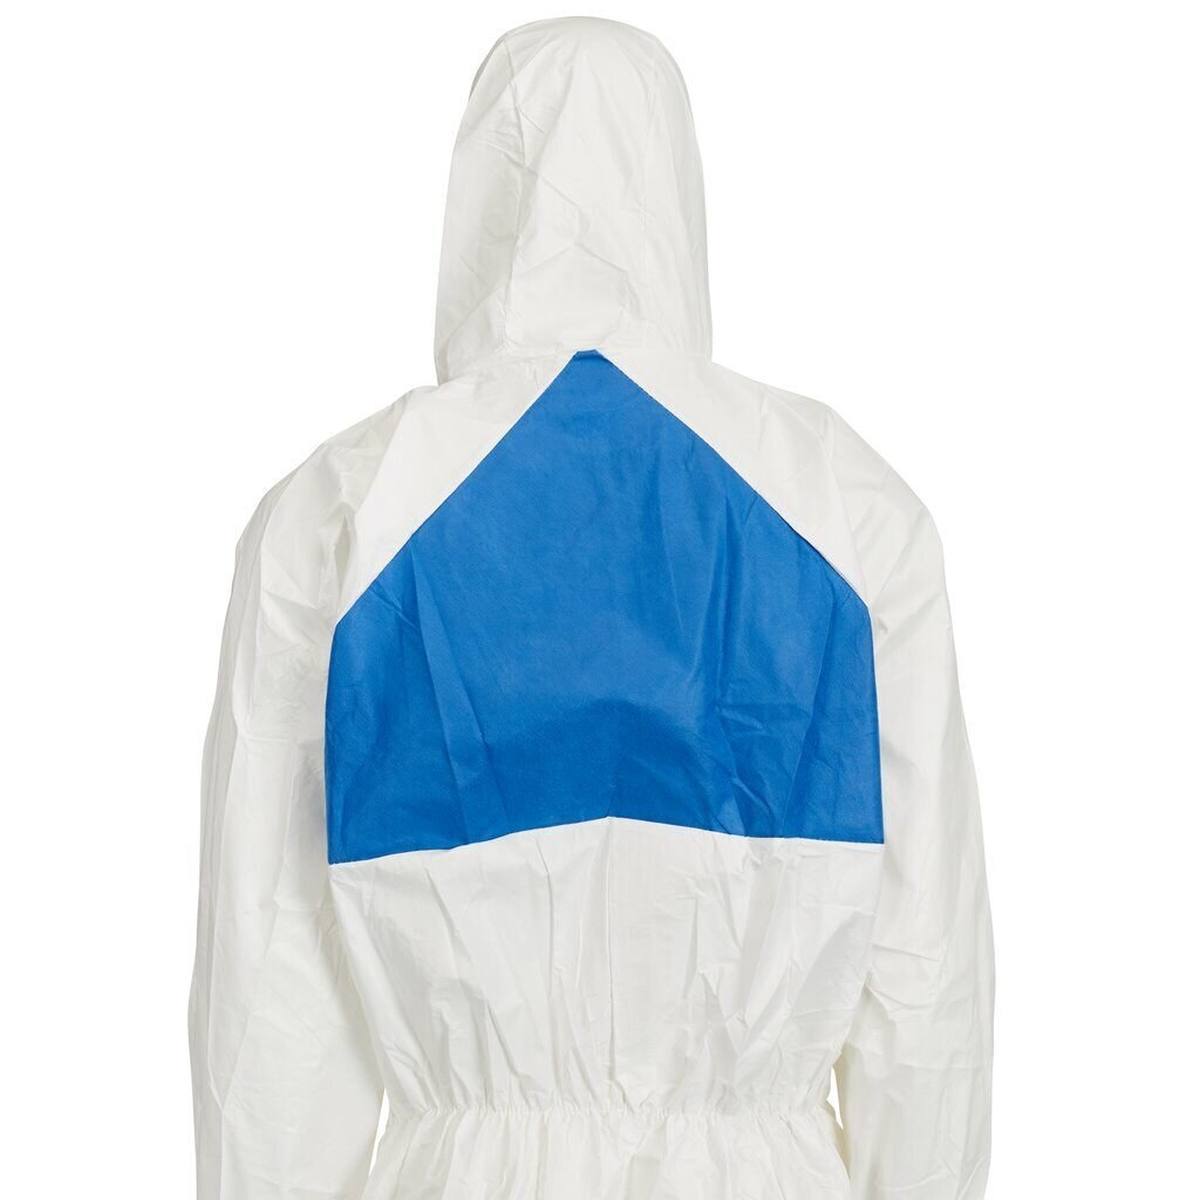 3M Protective suit 50198L White Blue, TYPE 5/6, size L